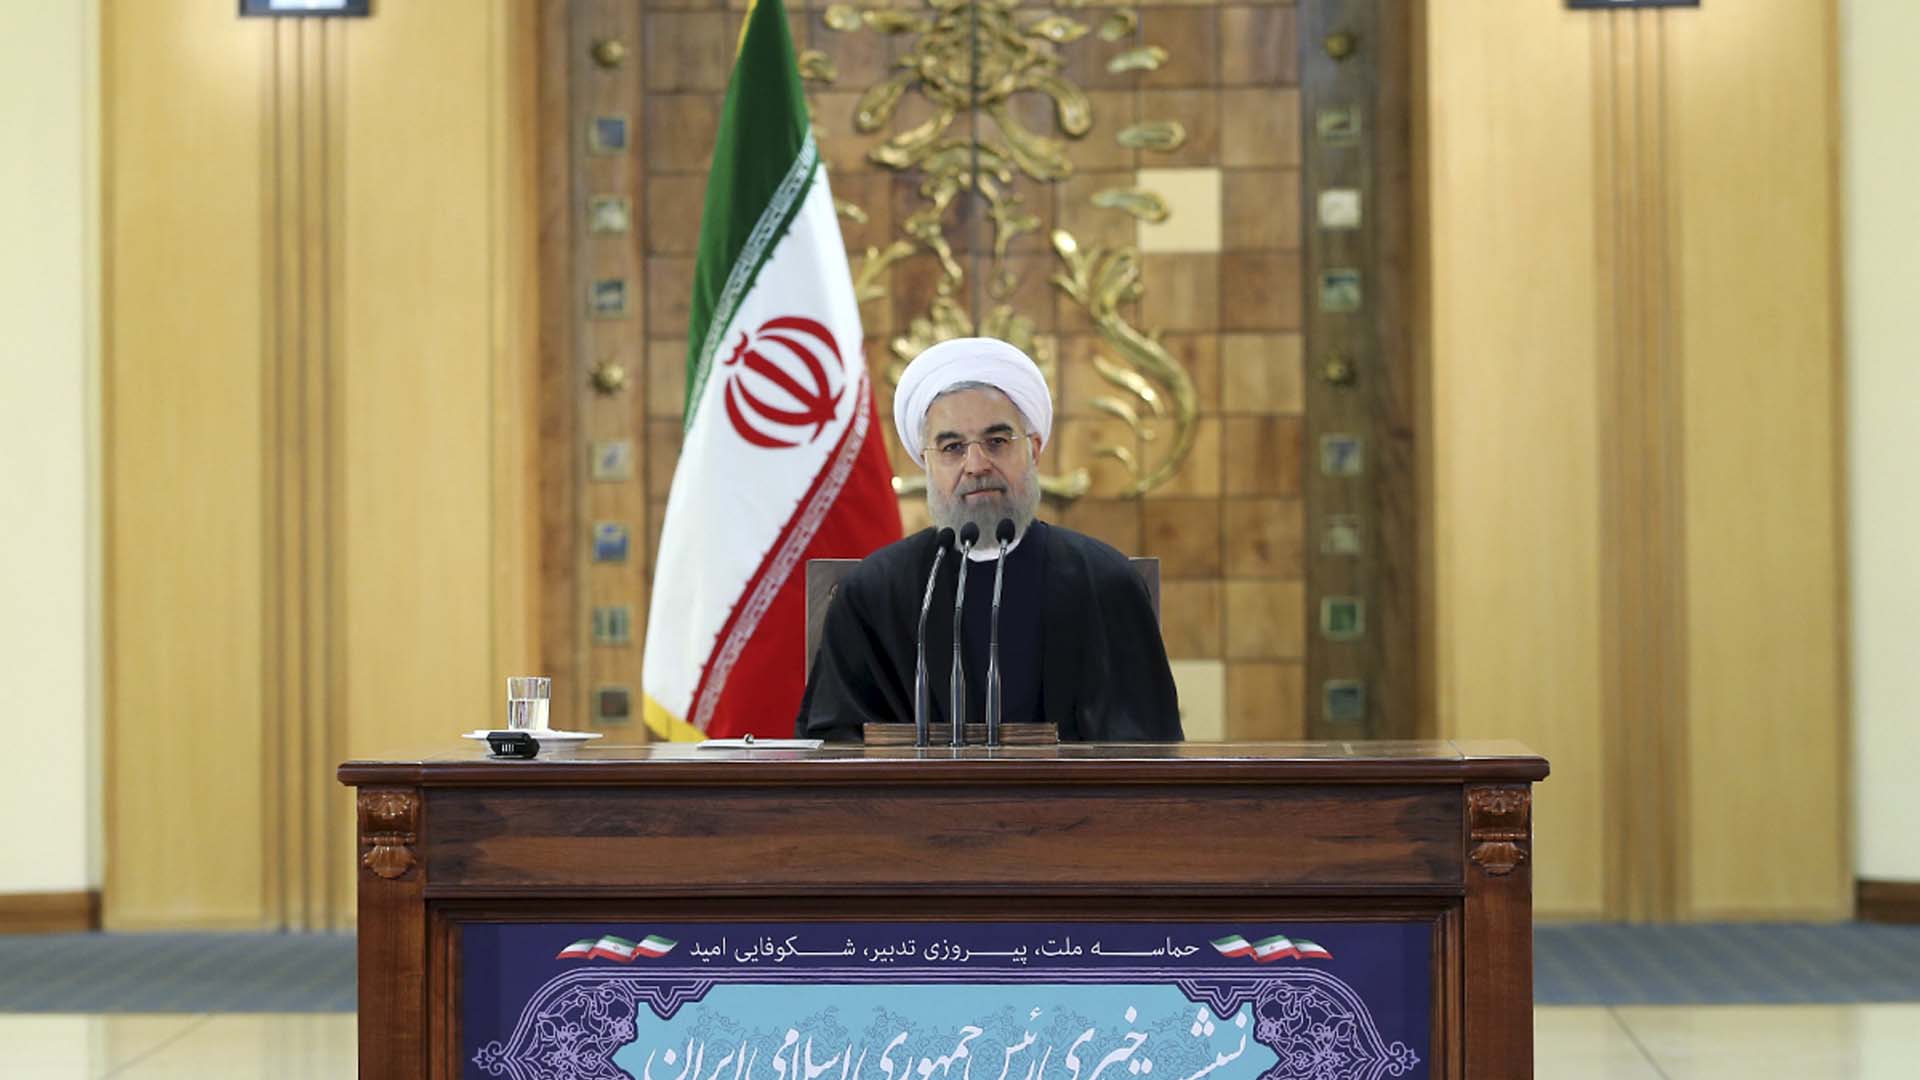 El presidente iraní espera poder retomar las relaciones diplomáticas y poner cese a los conflictos